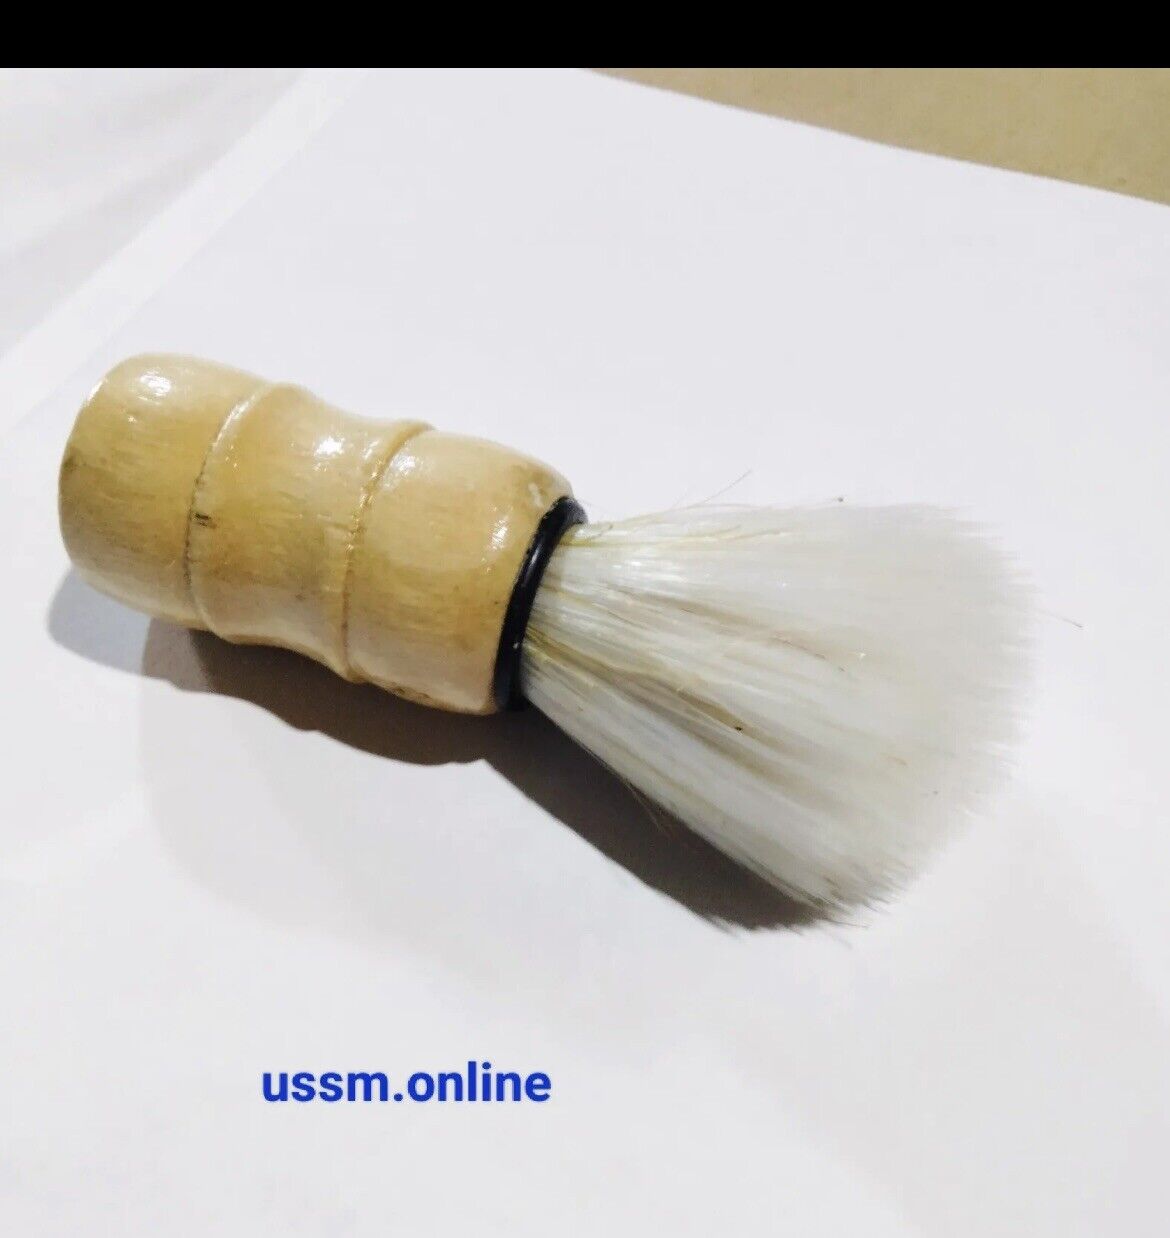 Men's Shaving Brush - Wooden Handle